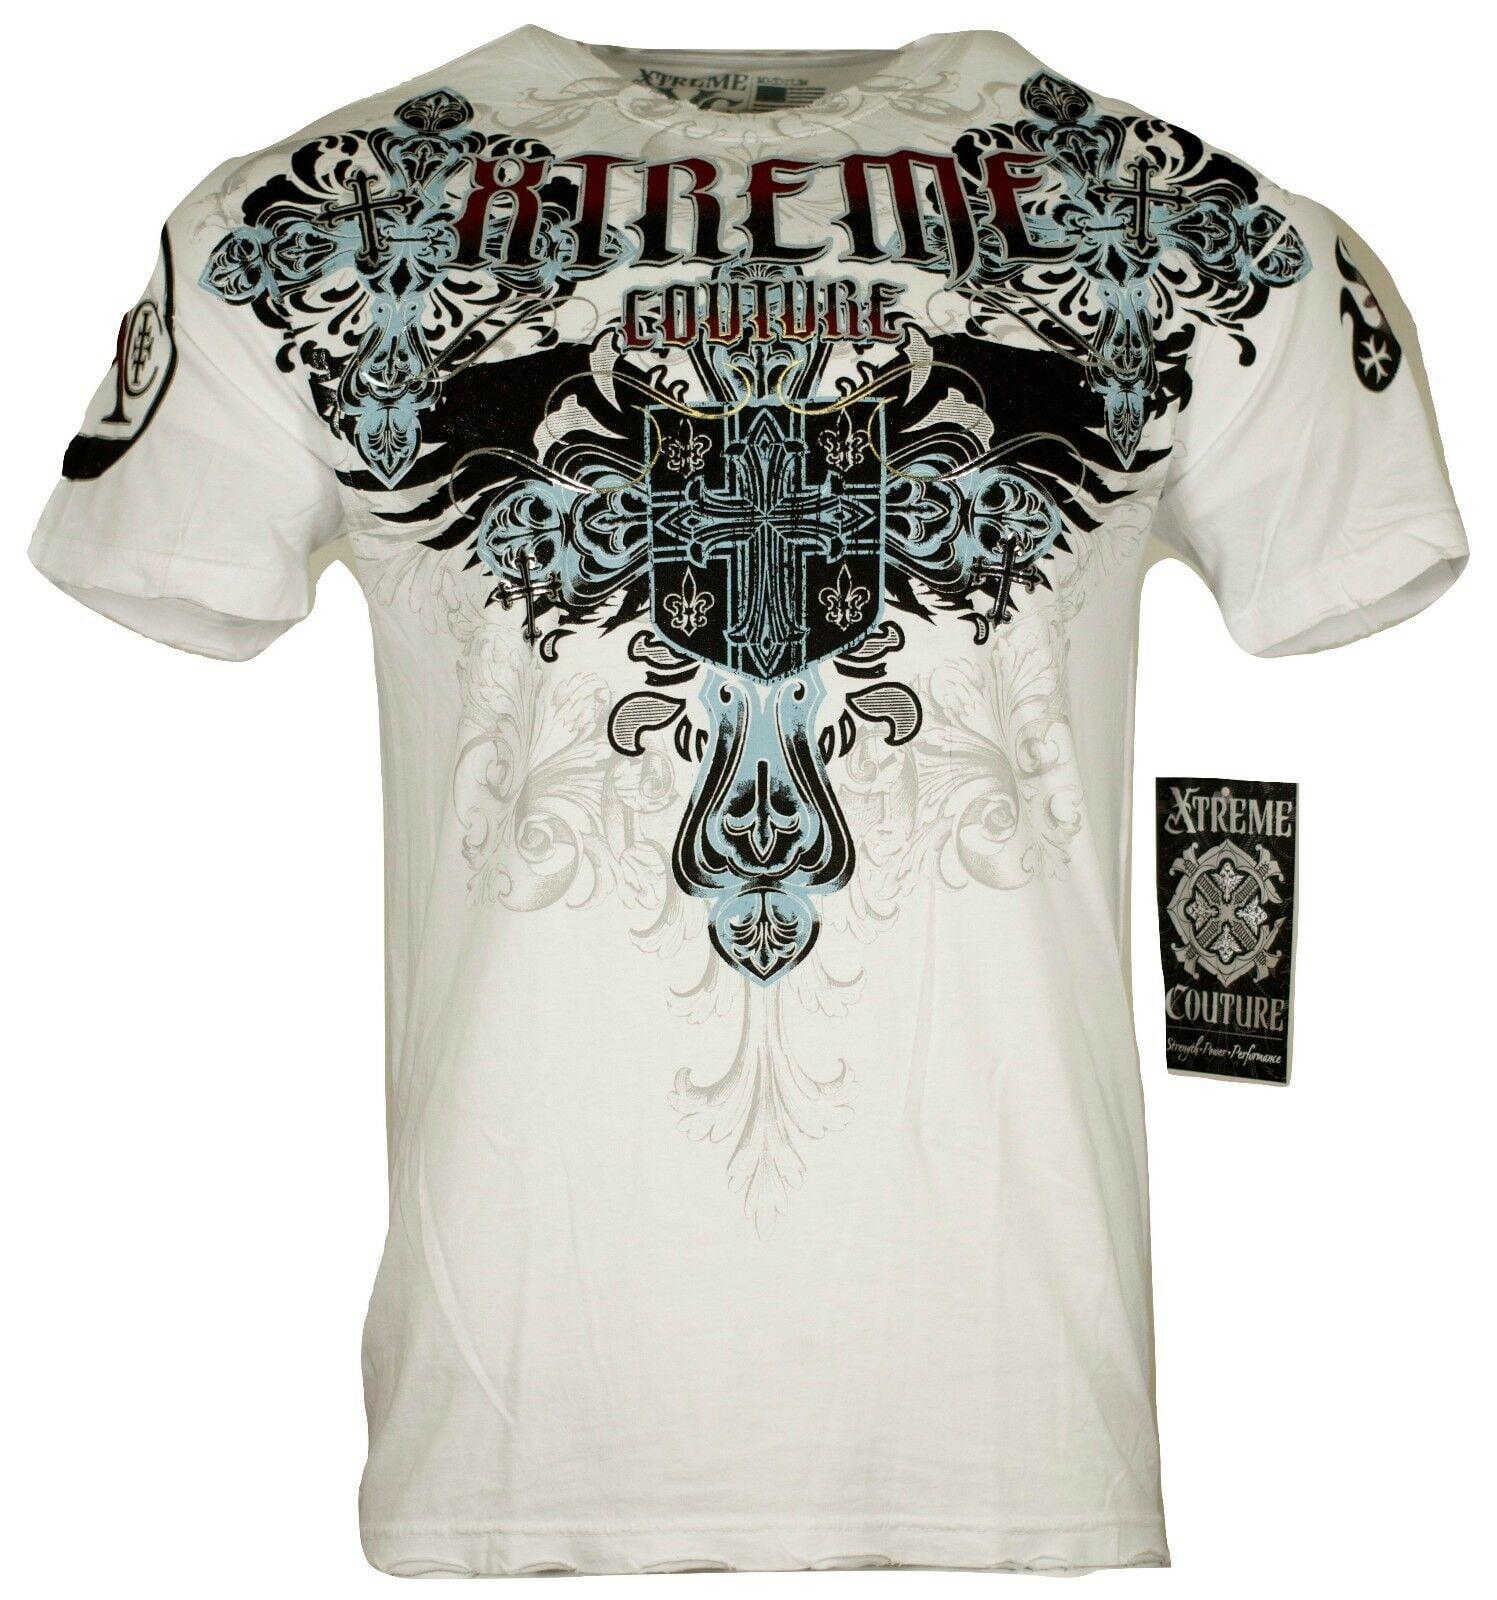 Xtreme couture By Affliction Men's T-Shirt Classic Crest - Walmart.com